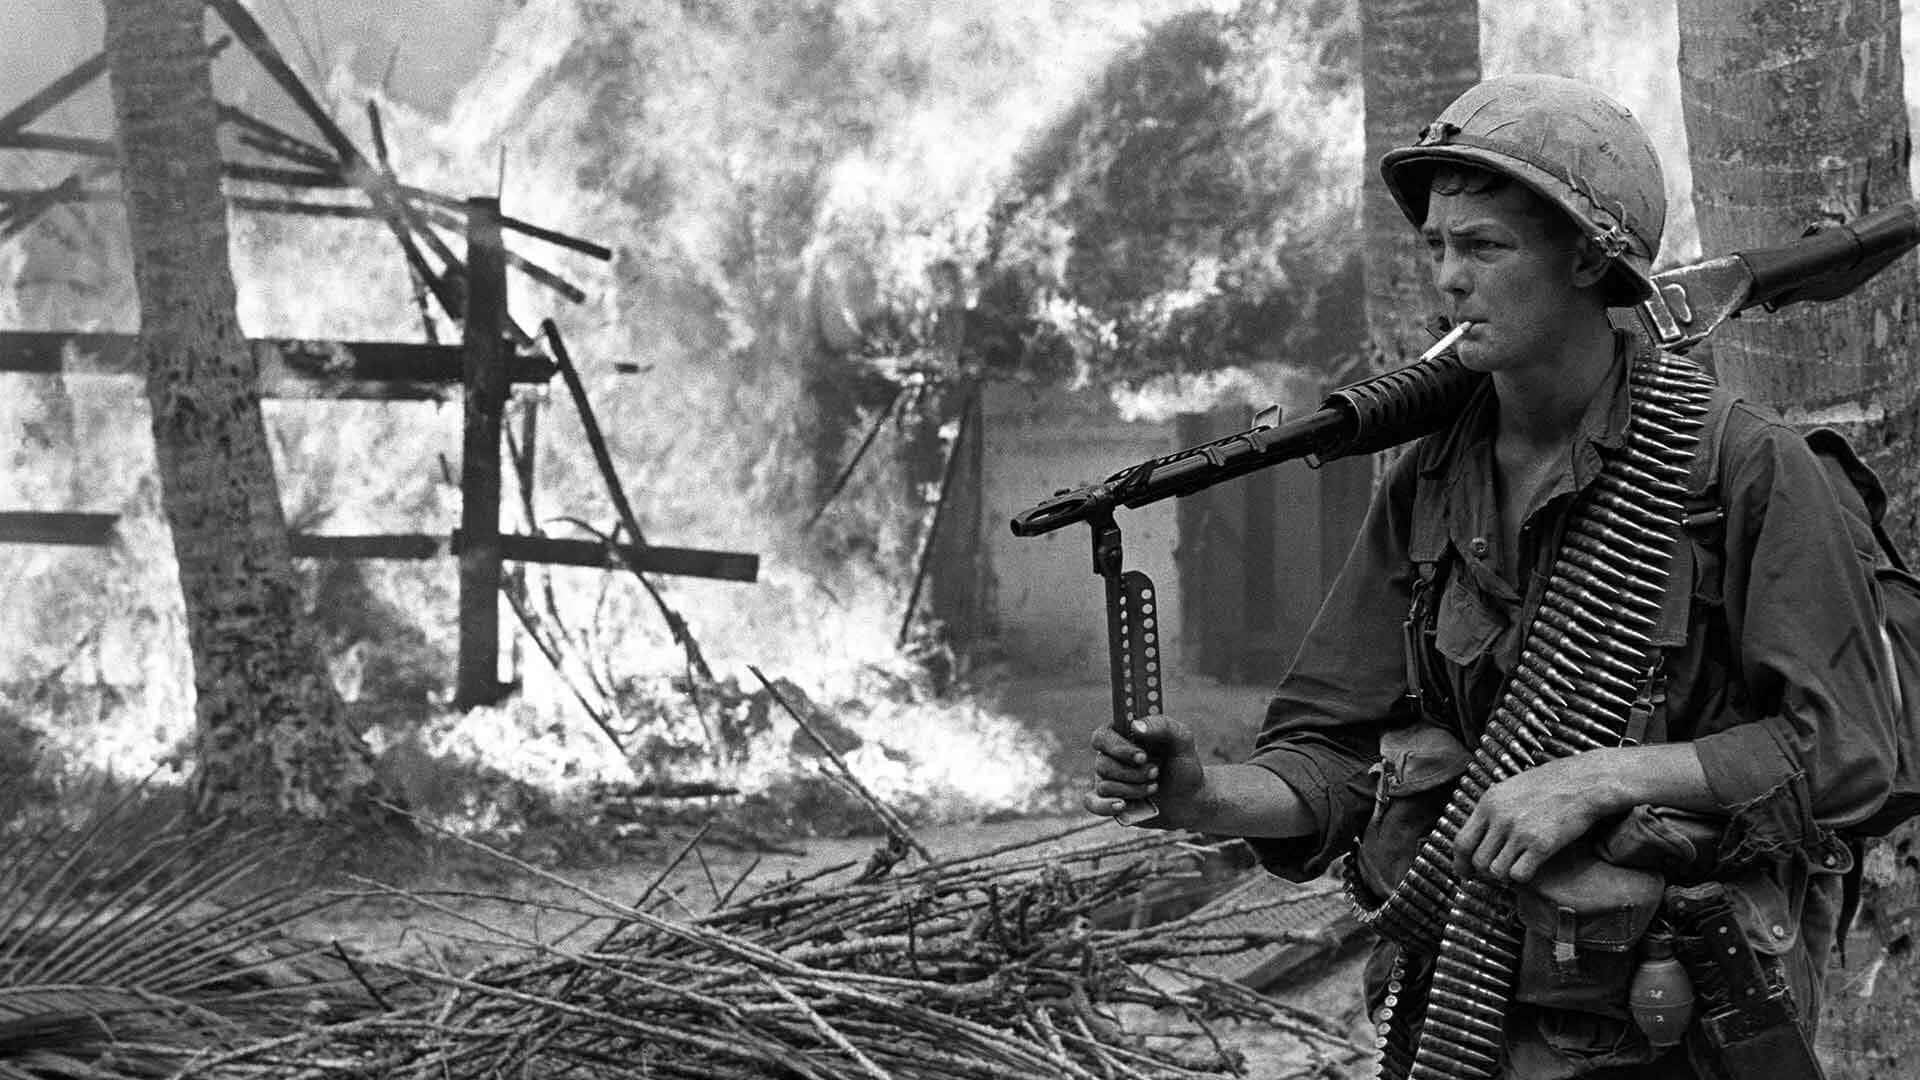 Intense Jungle Engagement - The Vietnam War